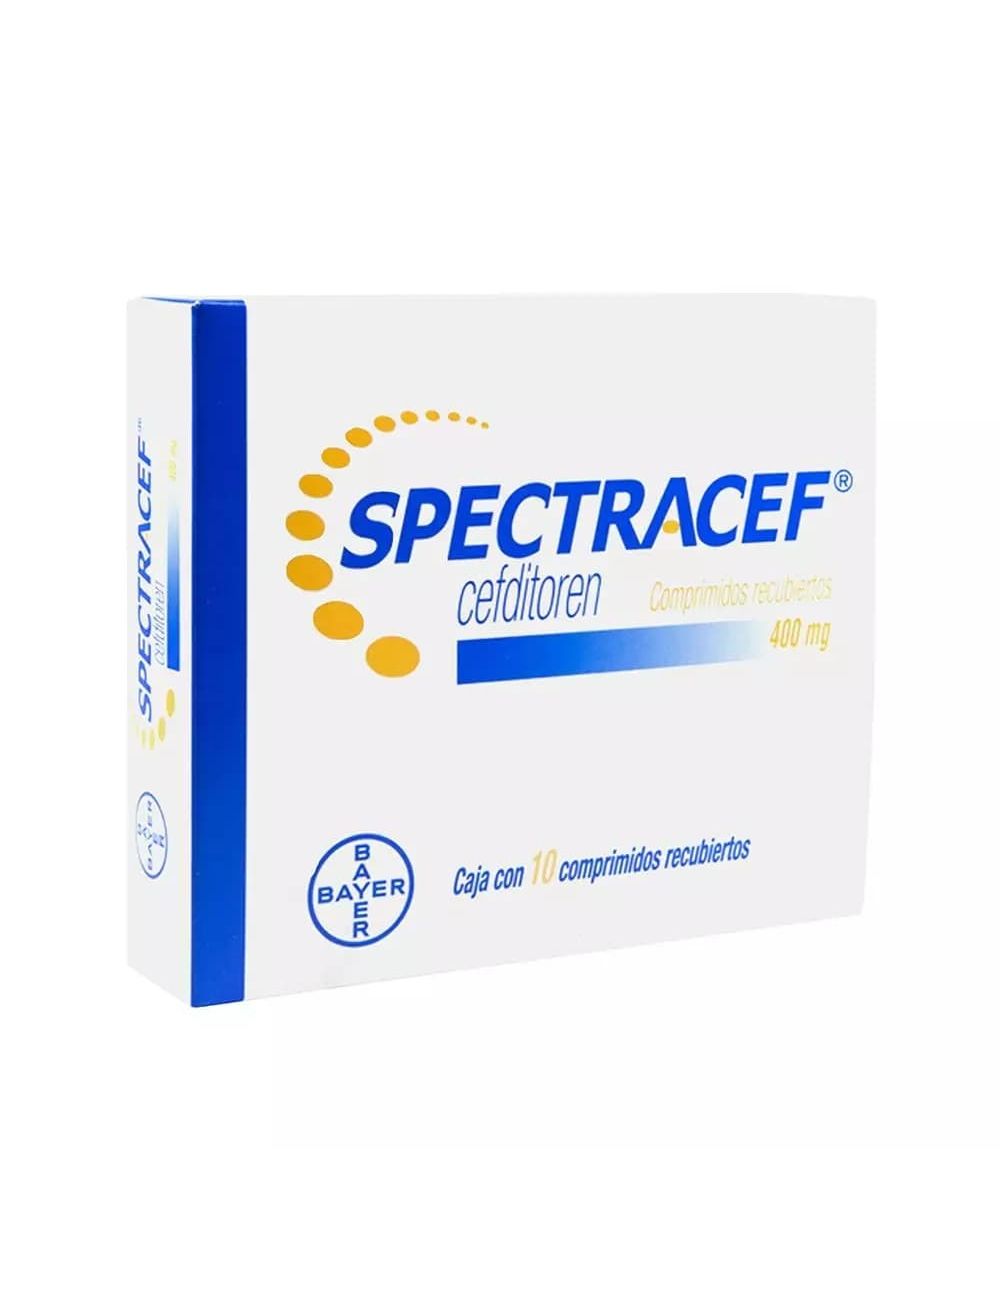 Spectracef 400 mg Caja Con 10 Comprimidos Recubiertos - RX2